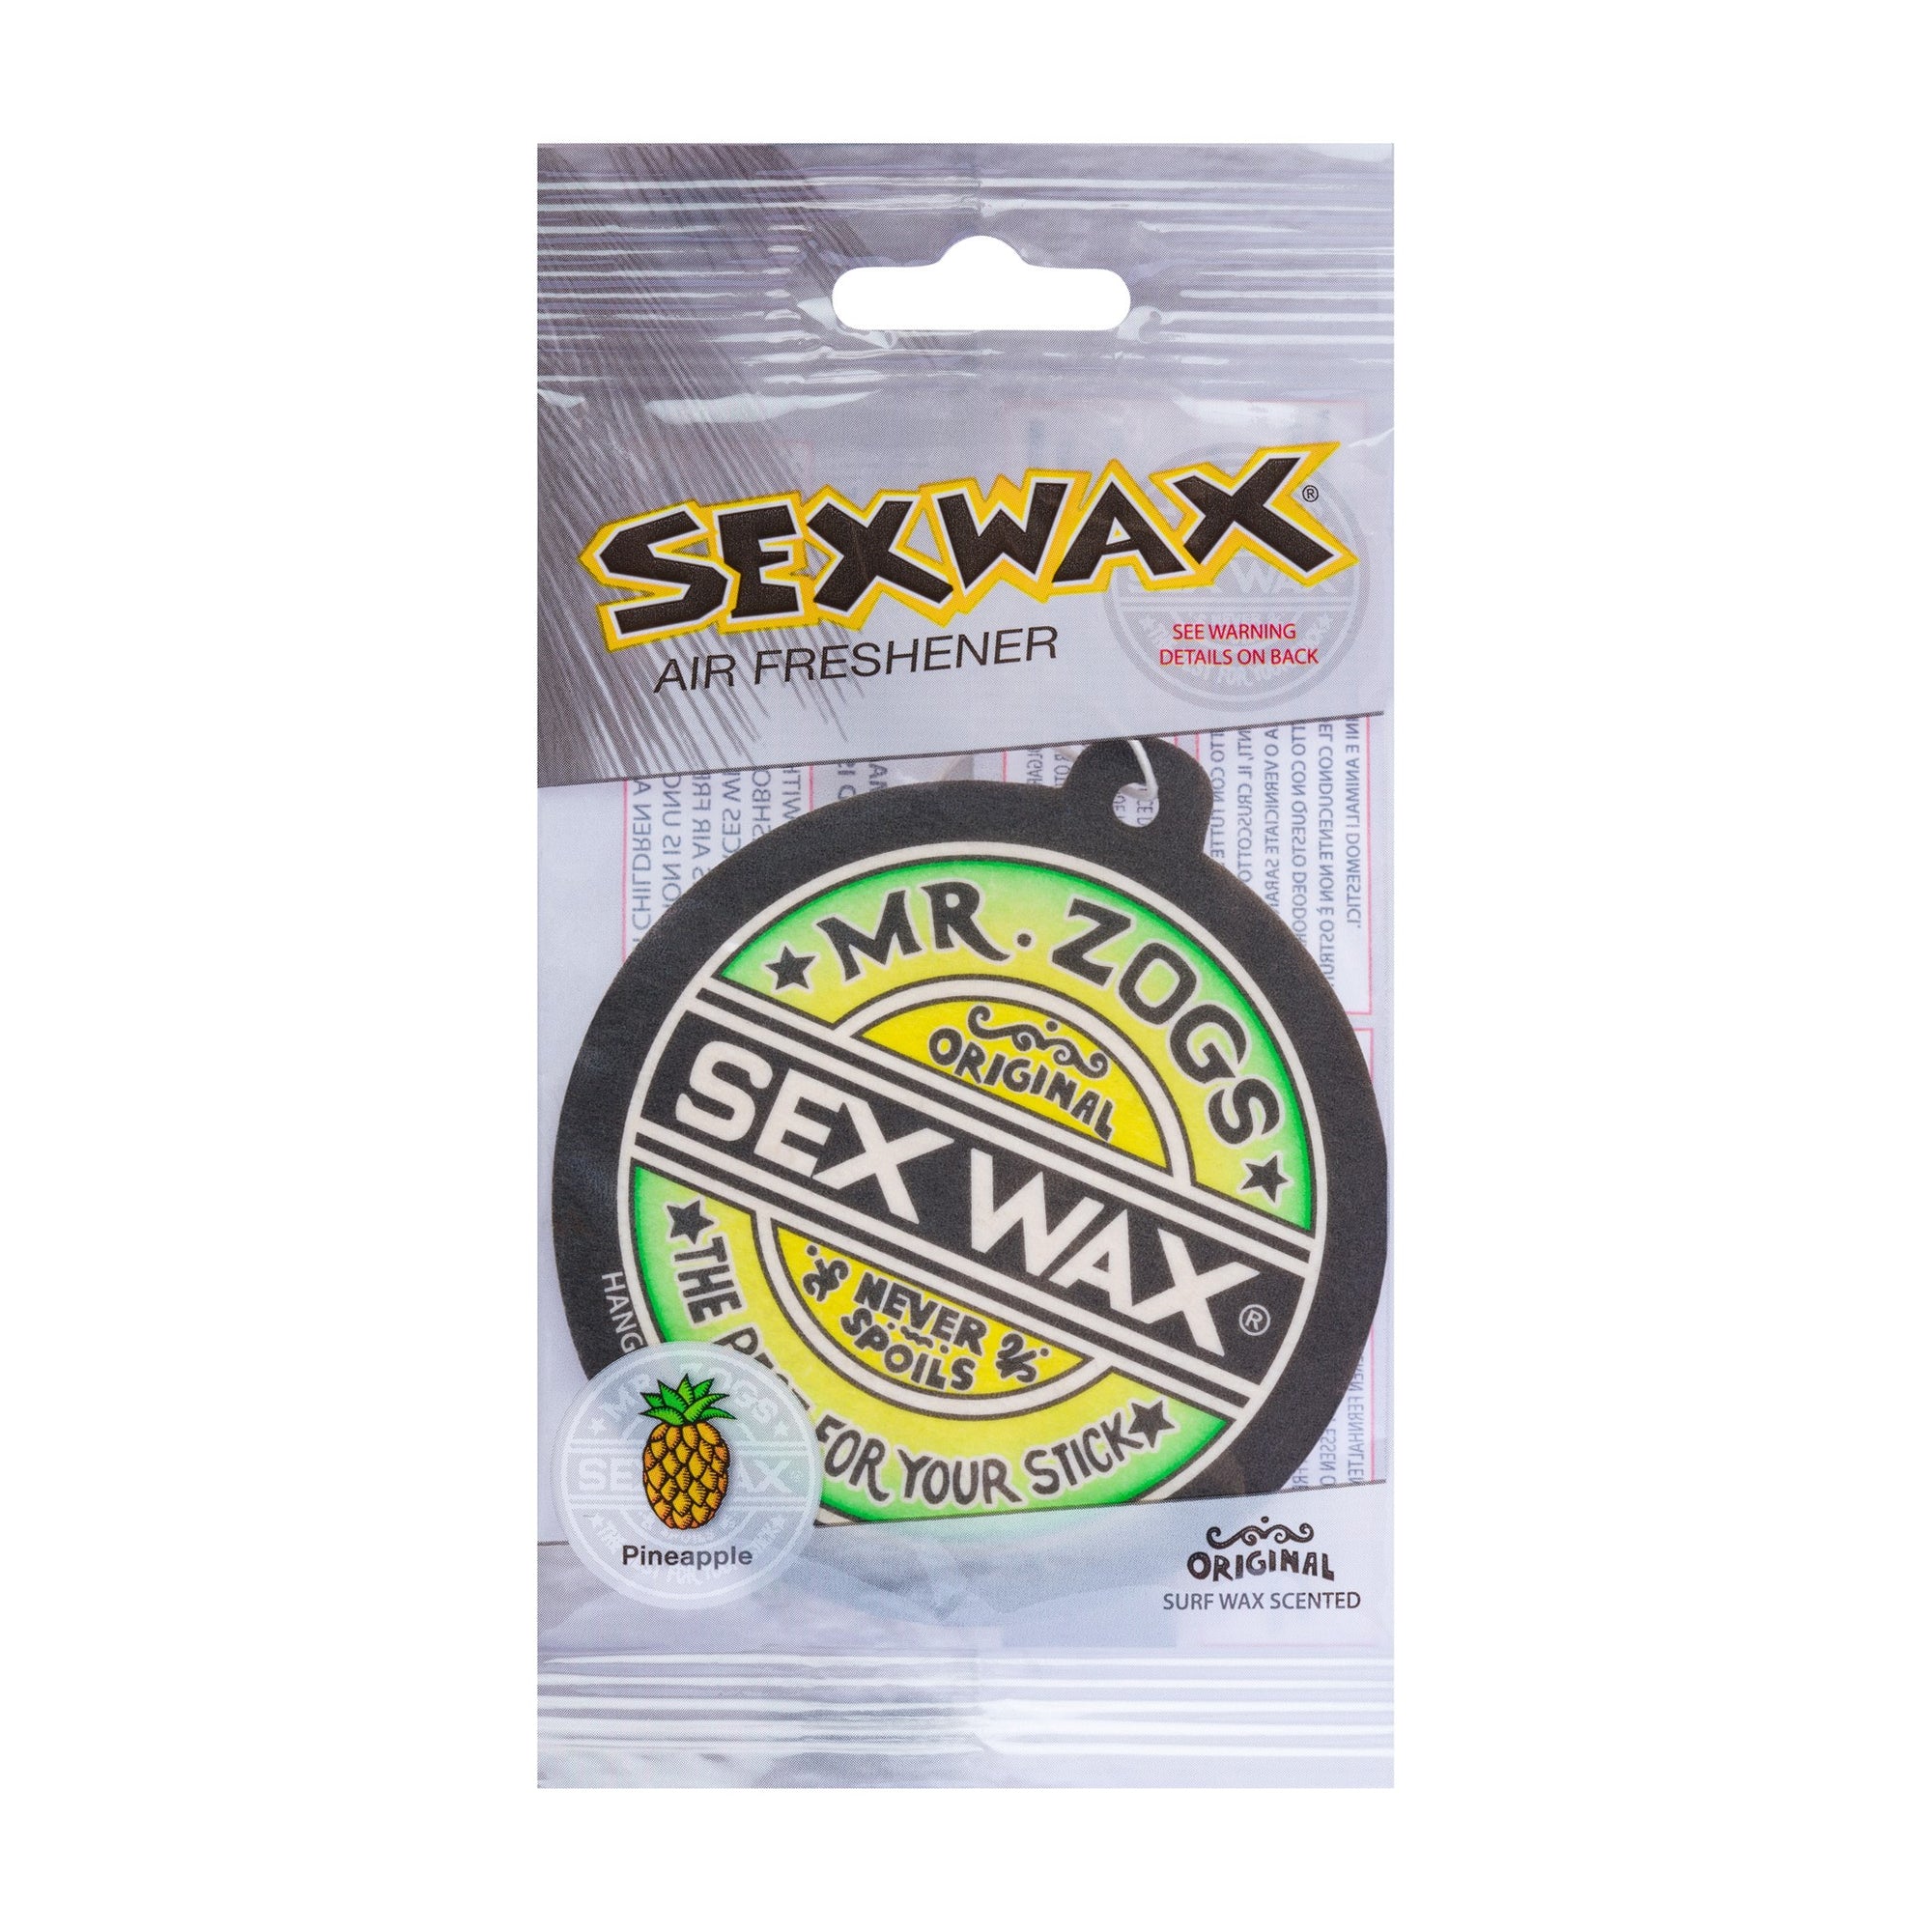 Sex Wax Car Freshner - Pineapple